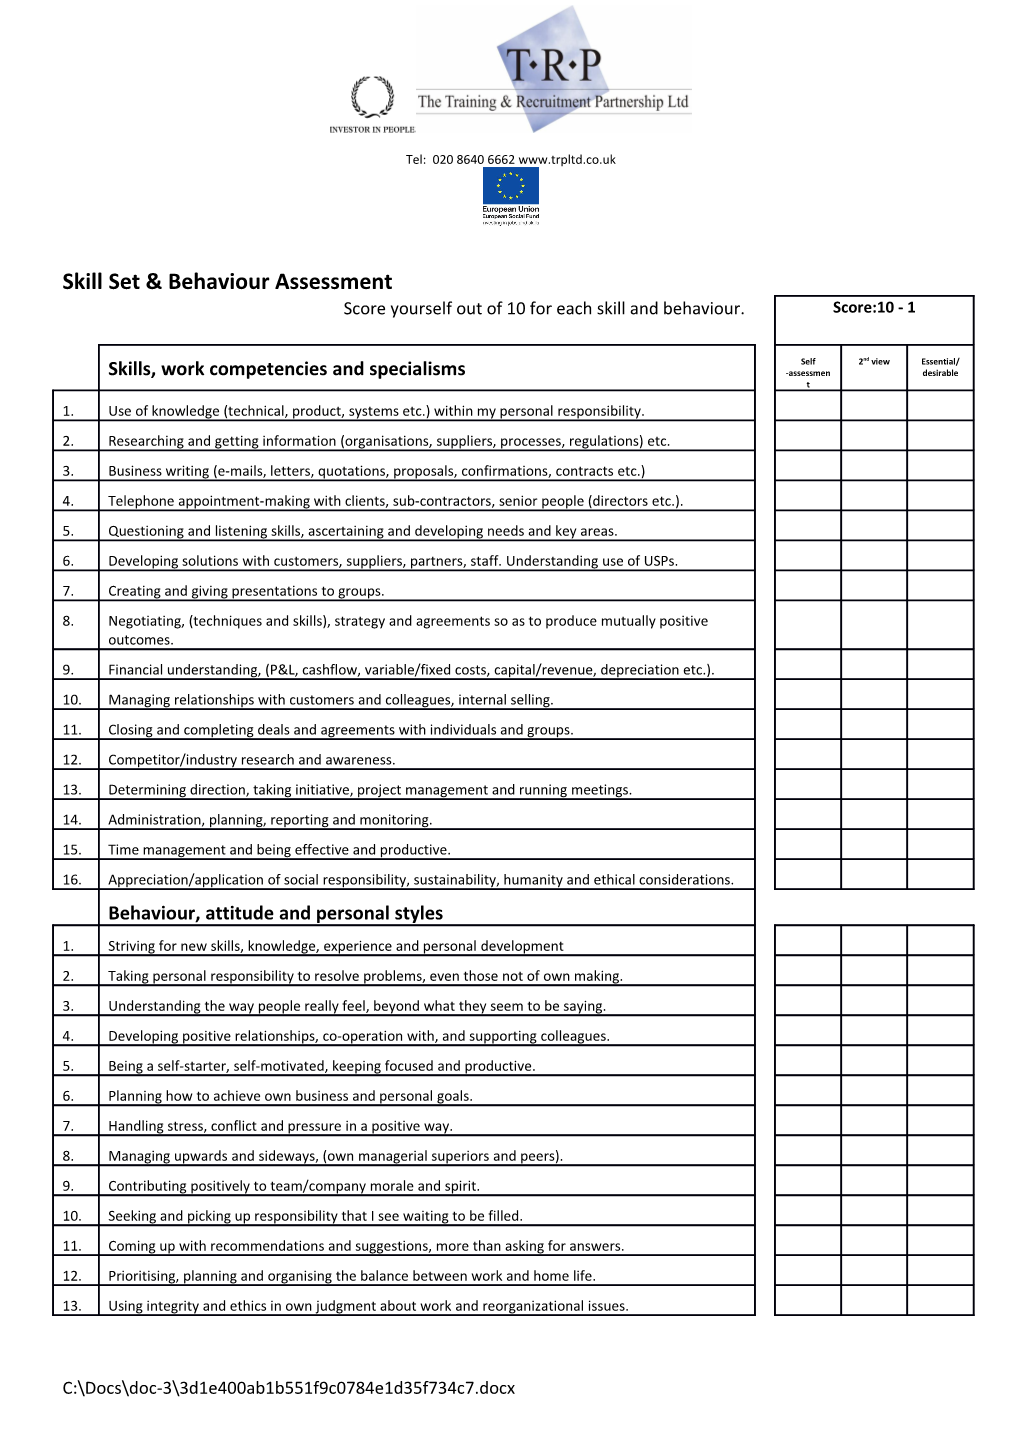 Skill Set & Behaviour Assessment